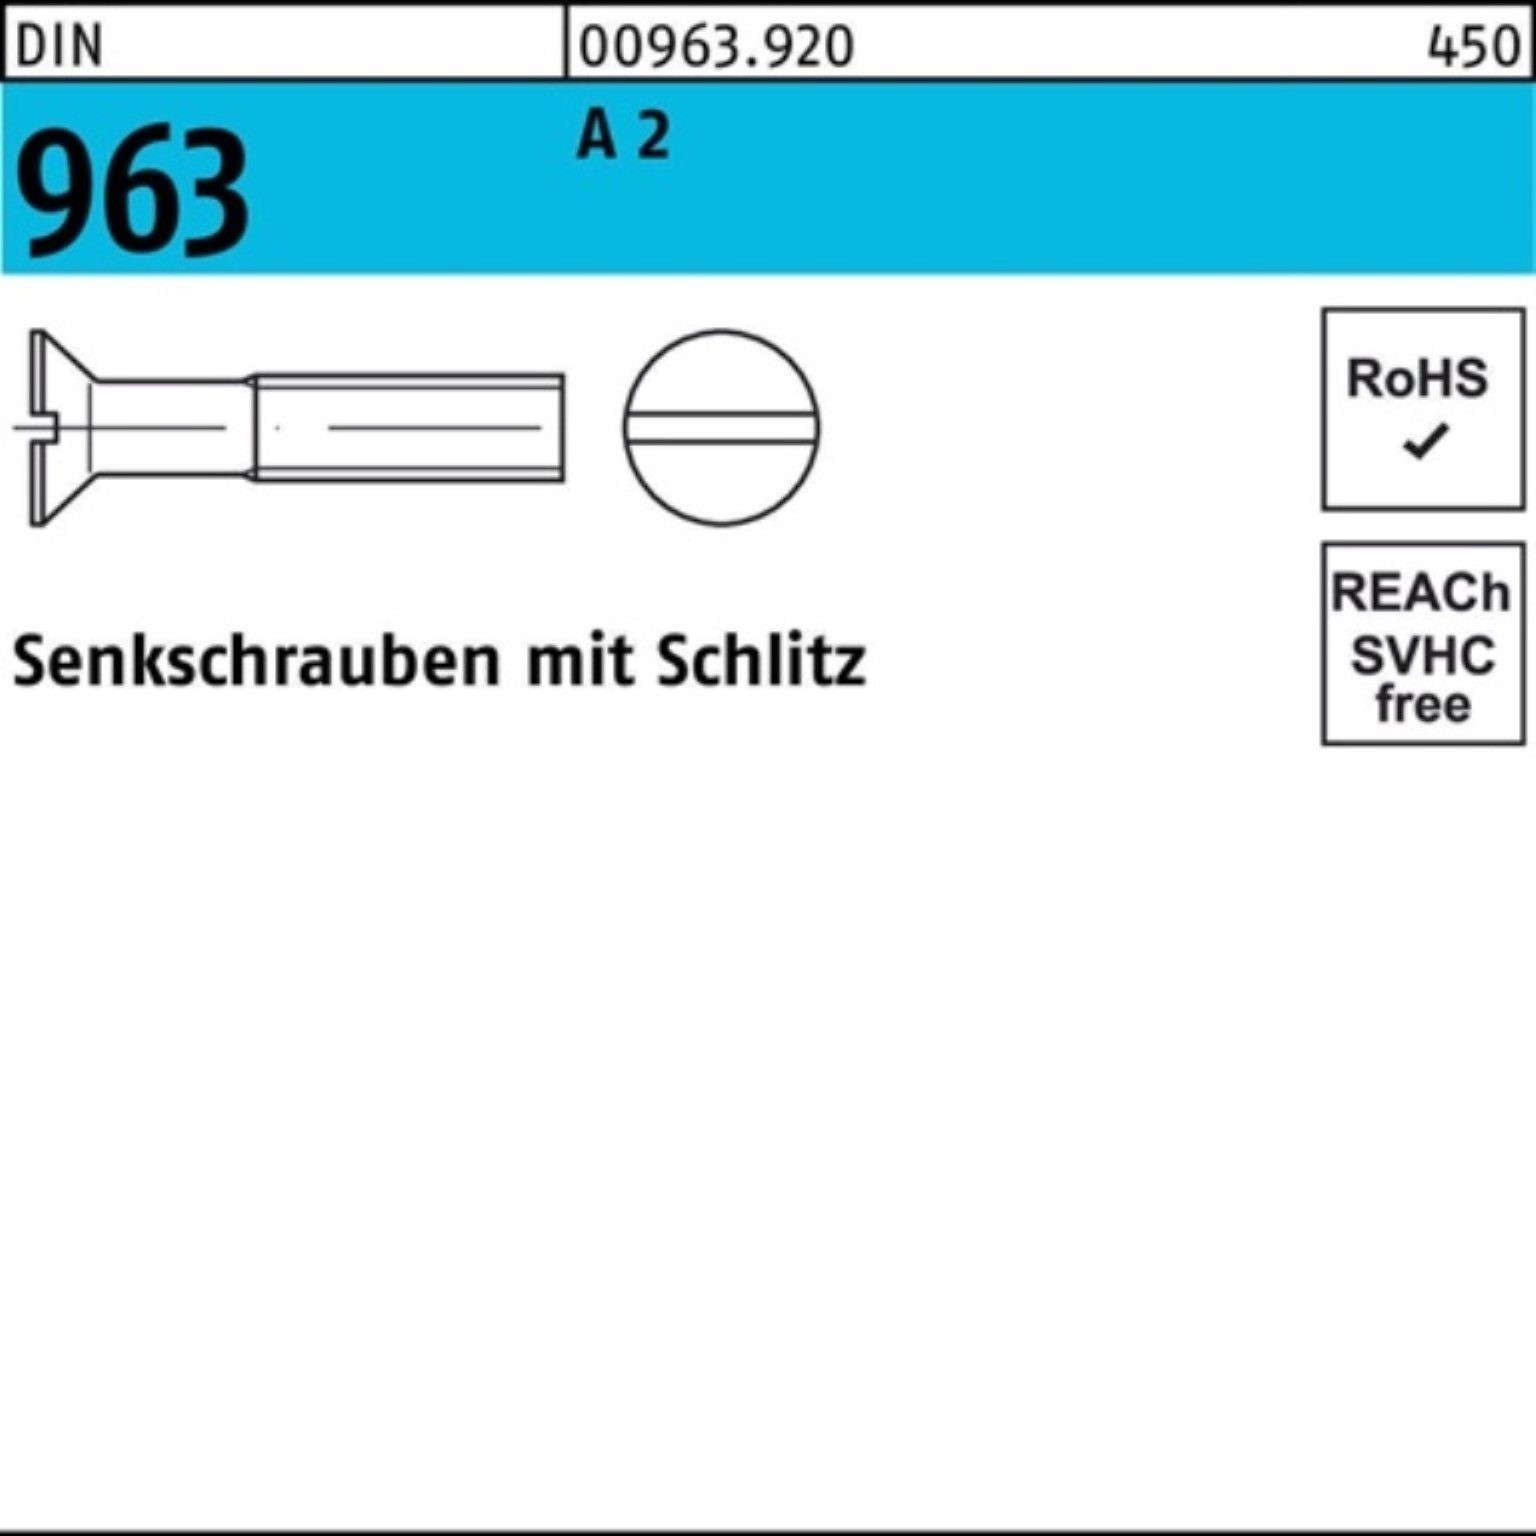 Reyher Senkschraube Schlitz 963 9 Stück Senkschraube 6 DIN 2 1000 DIN A Pack 1000er M1,4x